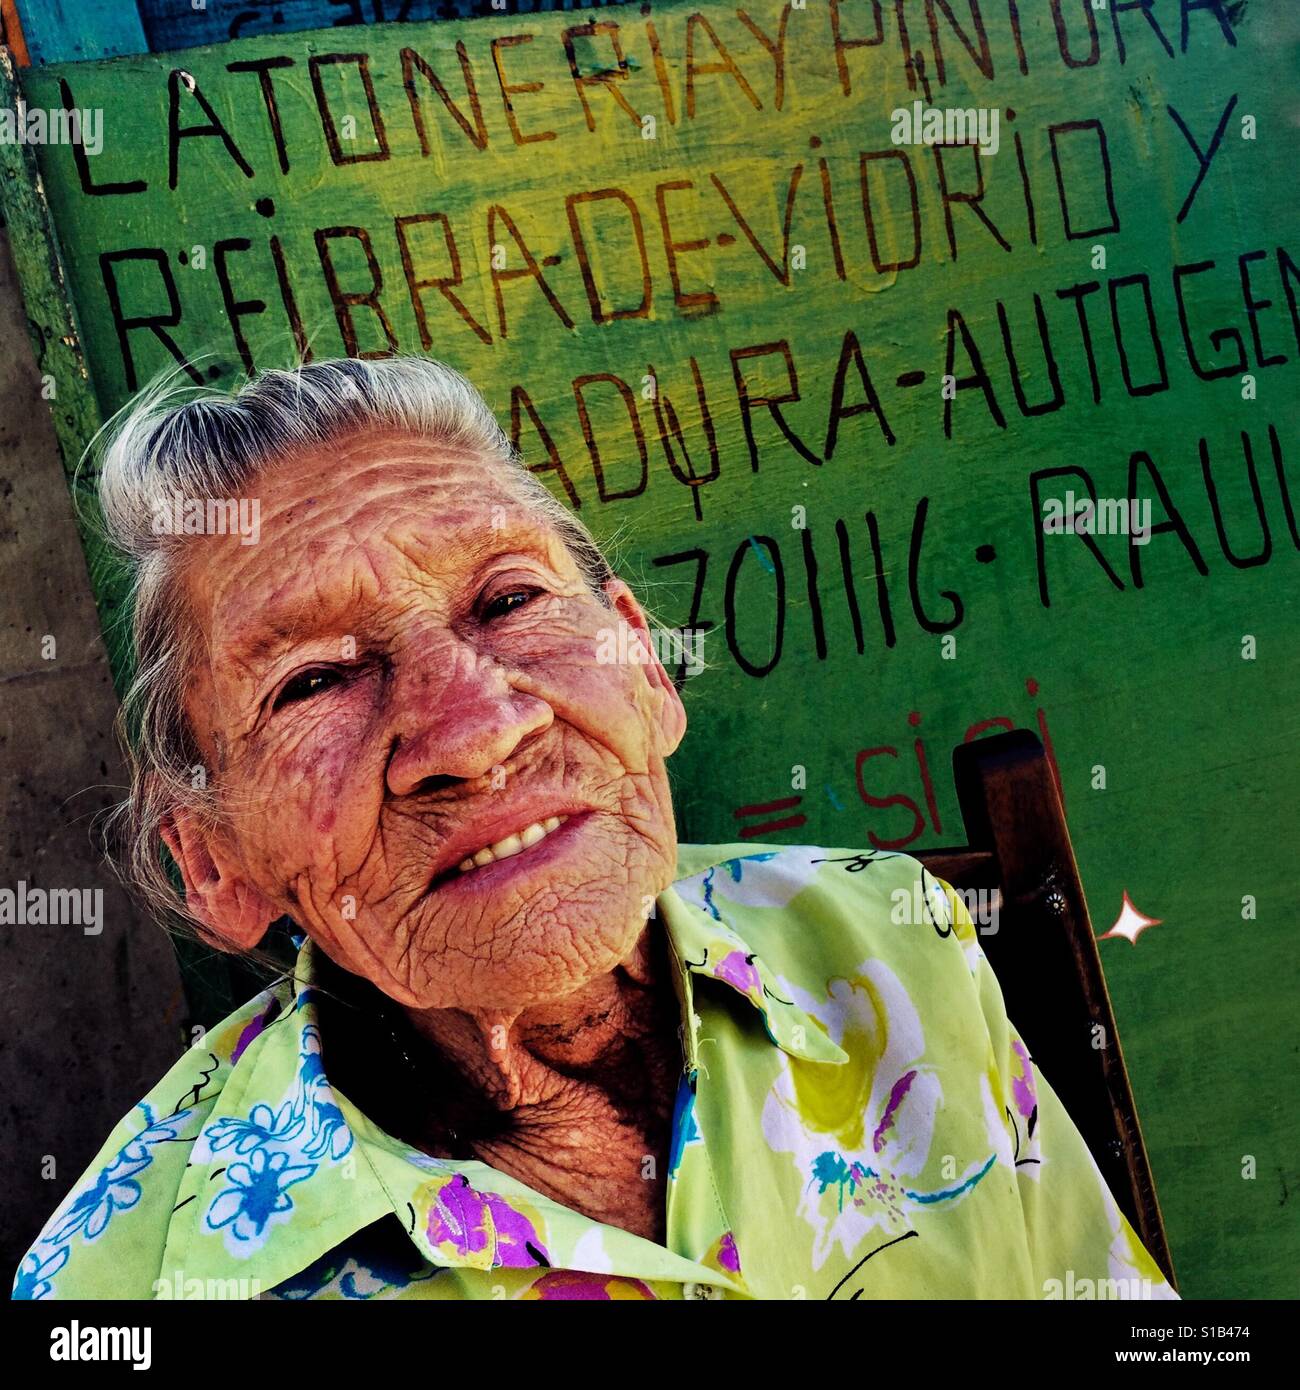 Julia Rosa Cardoña, de 88 años de edad mujer colombiana, posa para una fotografía en la calle del Barrio Triste, un barrio en el centro de Medellín, Colombia, 21 de noviembre de 2016. Foto de stock